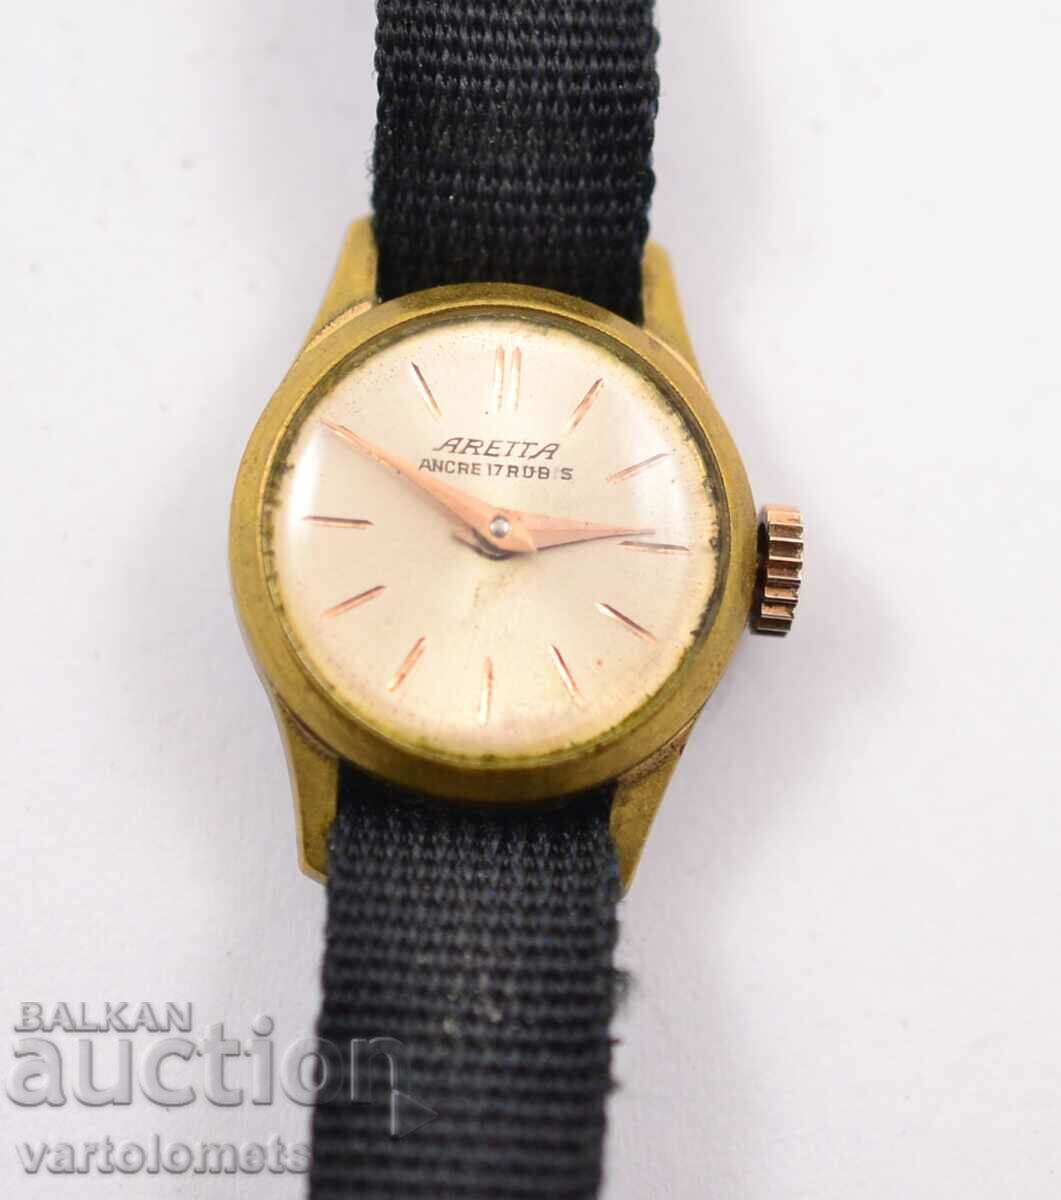 Γυναικείο επιχρυσωμένο ρολόι ARETTA - Έργα